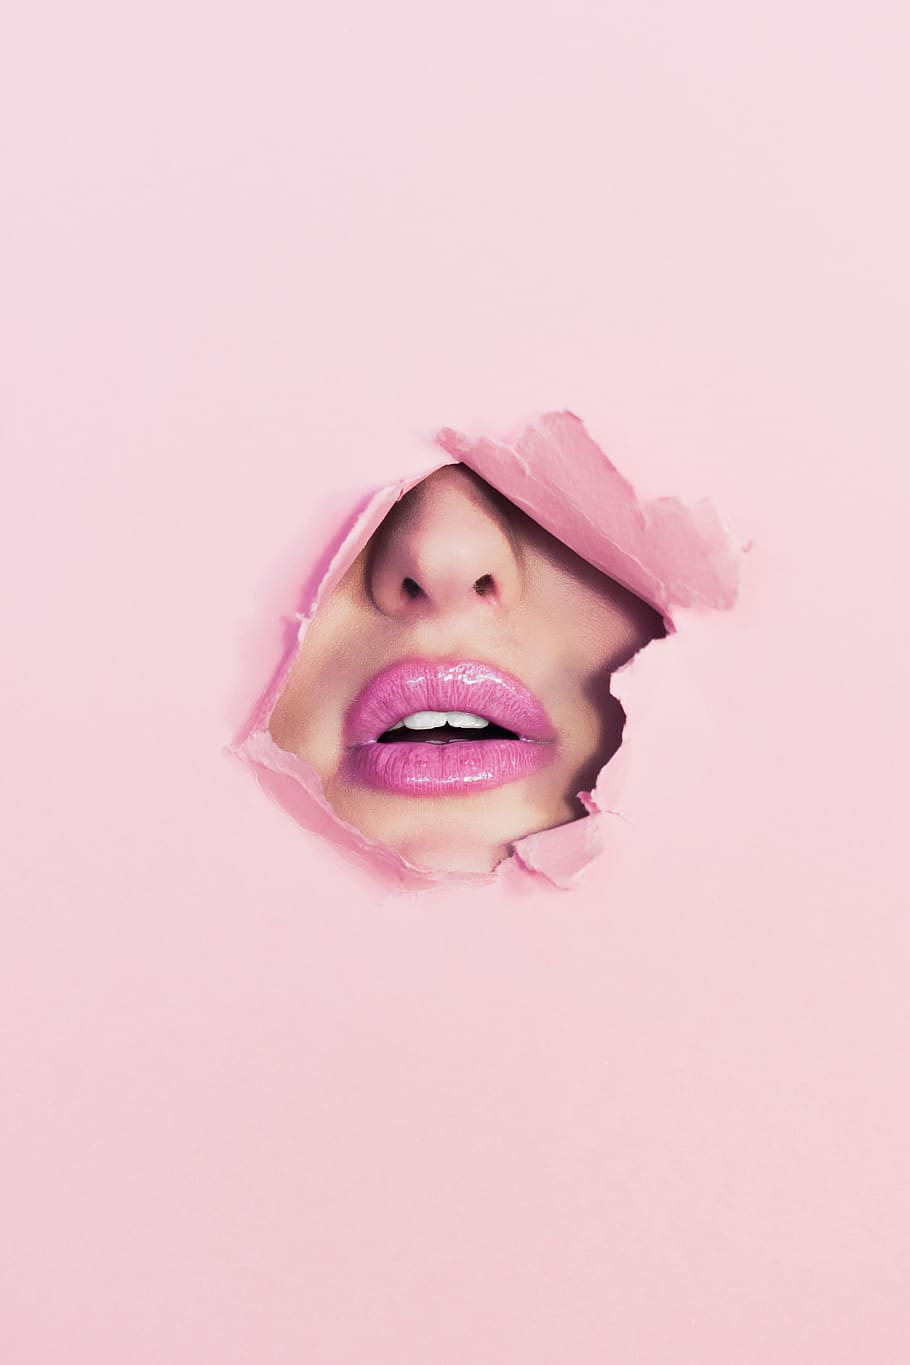 maquiagem, boca, batom, feminino, cor rosa, parte do corpo humano, mulheres, foto de estúdio, uma pessoa, boca humana